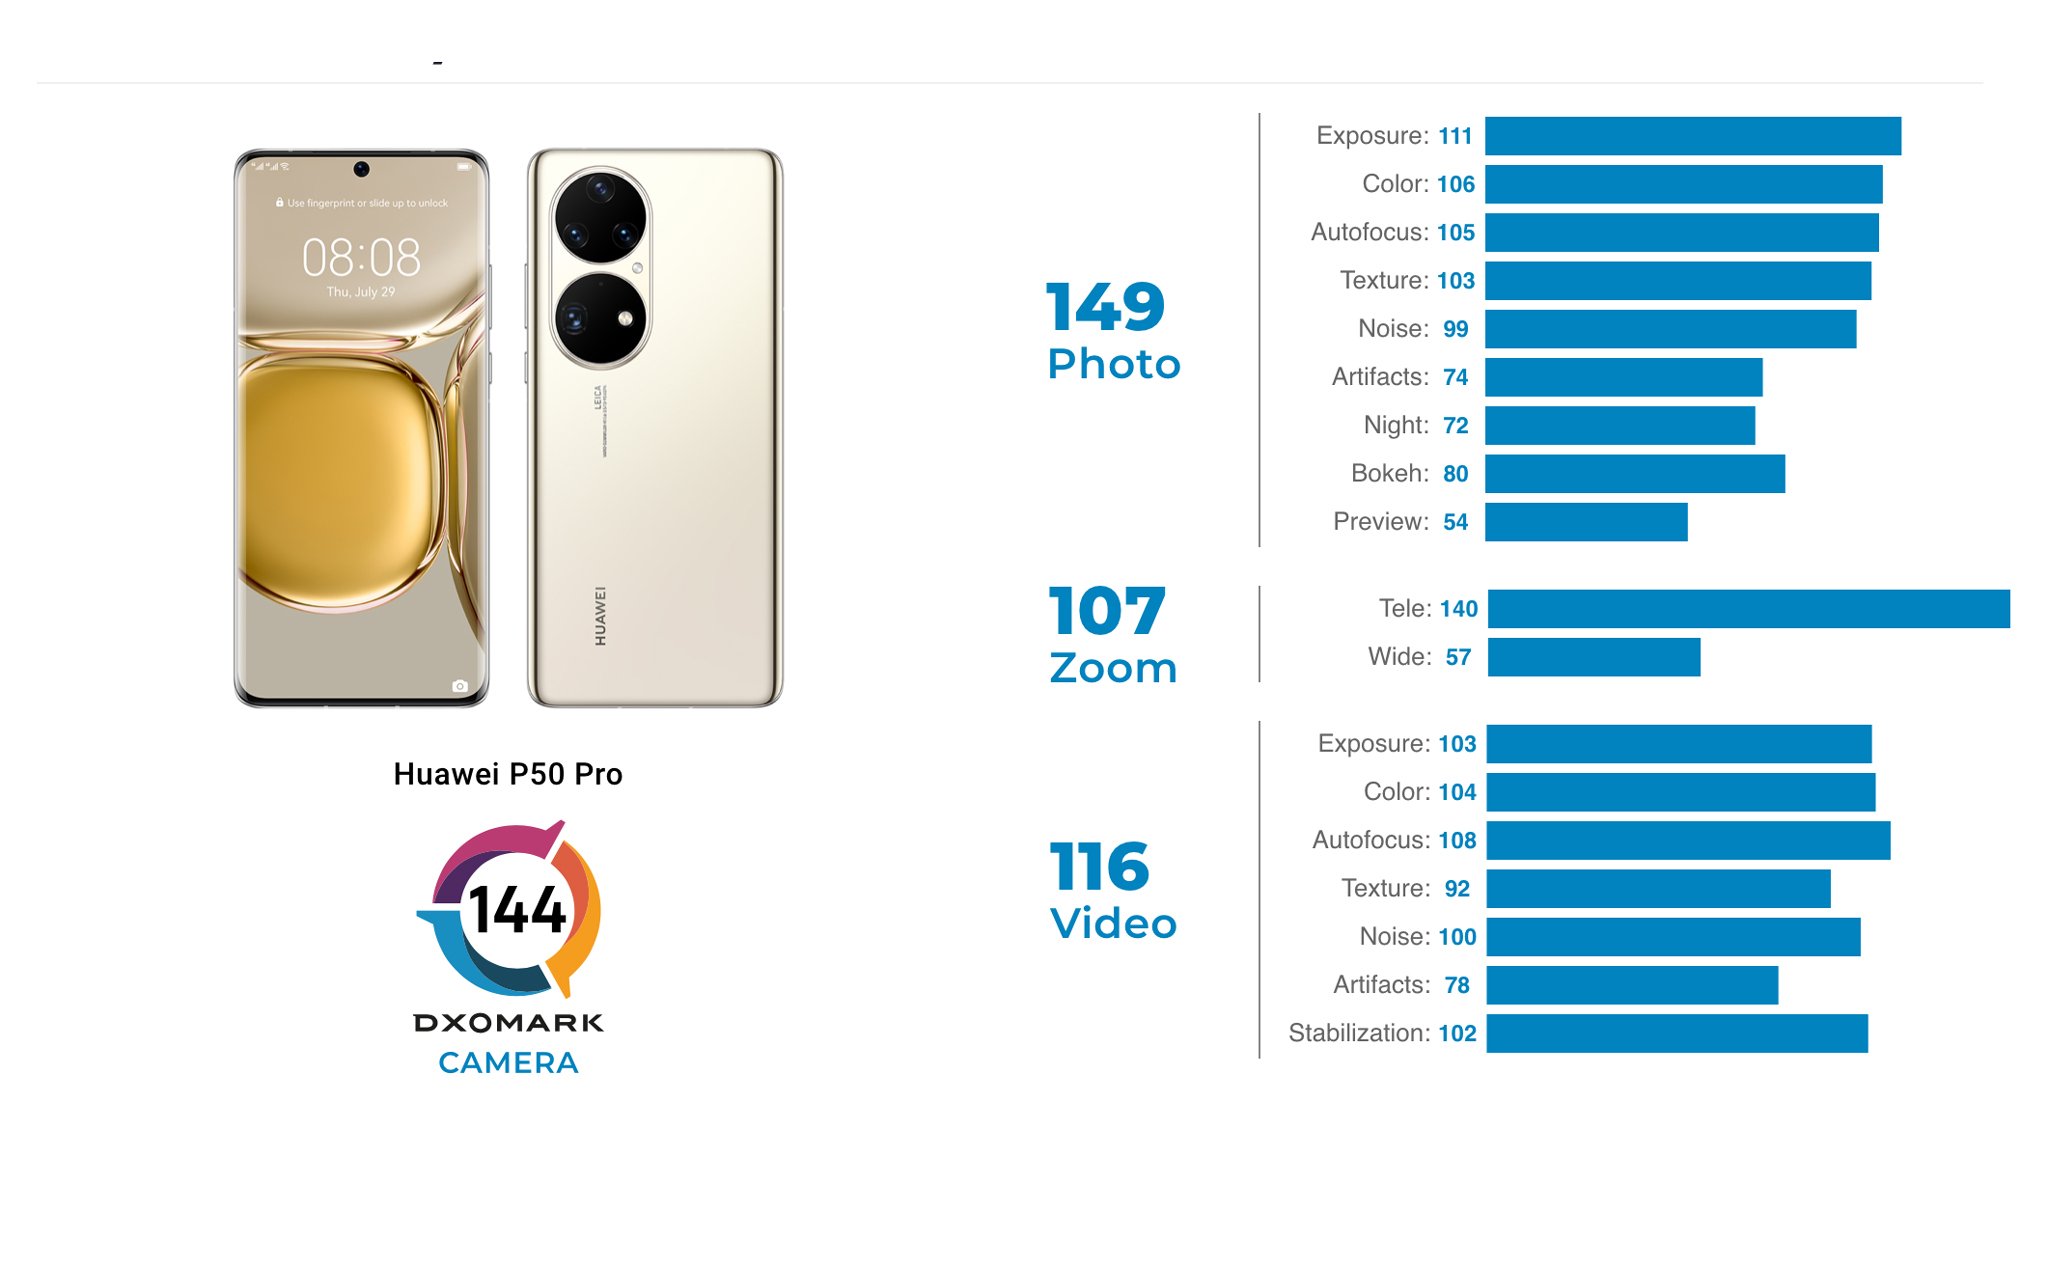 Huawei P50 Pro được DxOMark chấm top 1 bảng xếp hạng camera mobile với điểm tổng 144